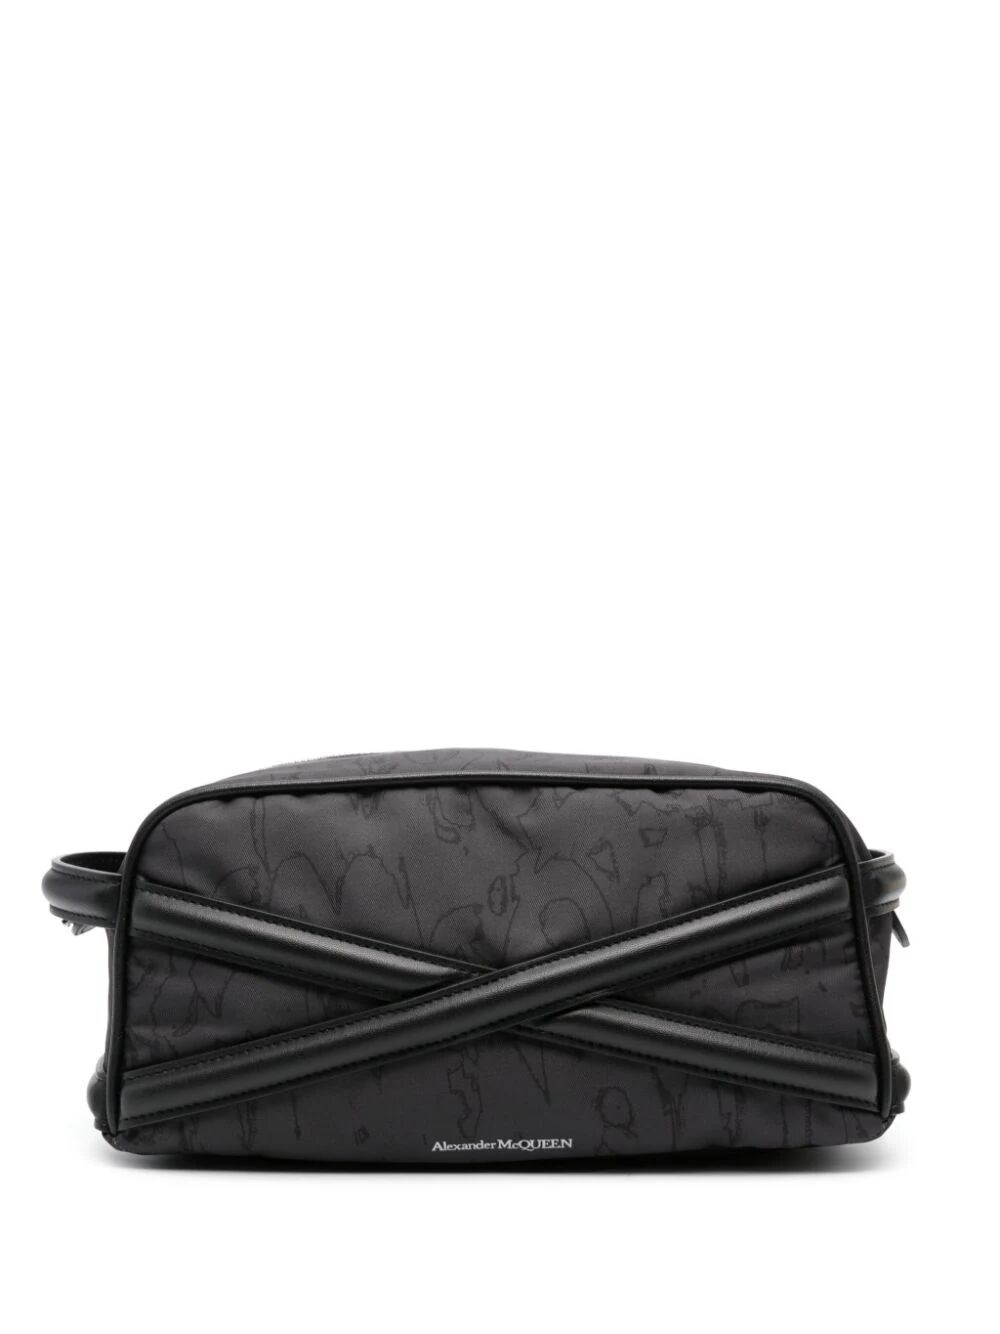 Shop Alexander Mcqueen Beauty Bag In Black